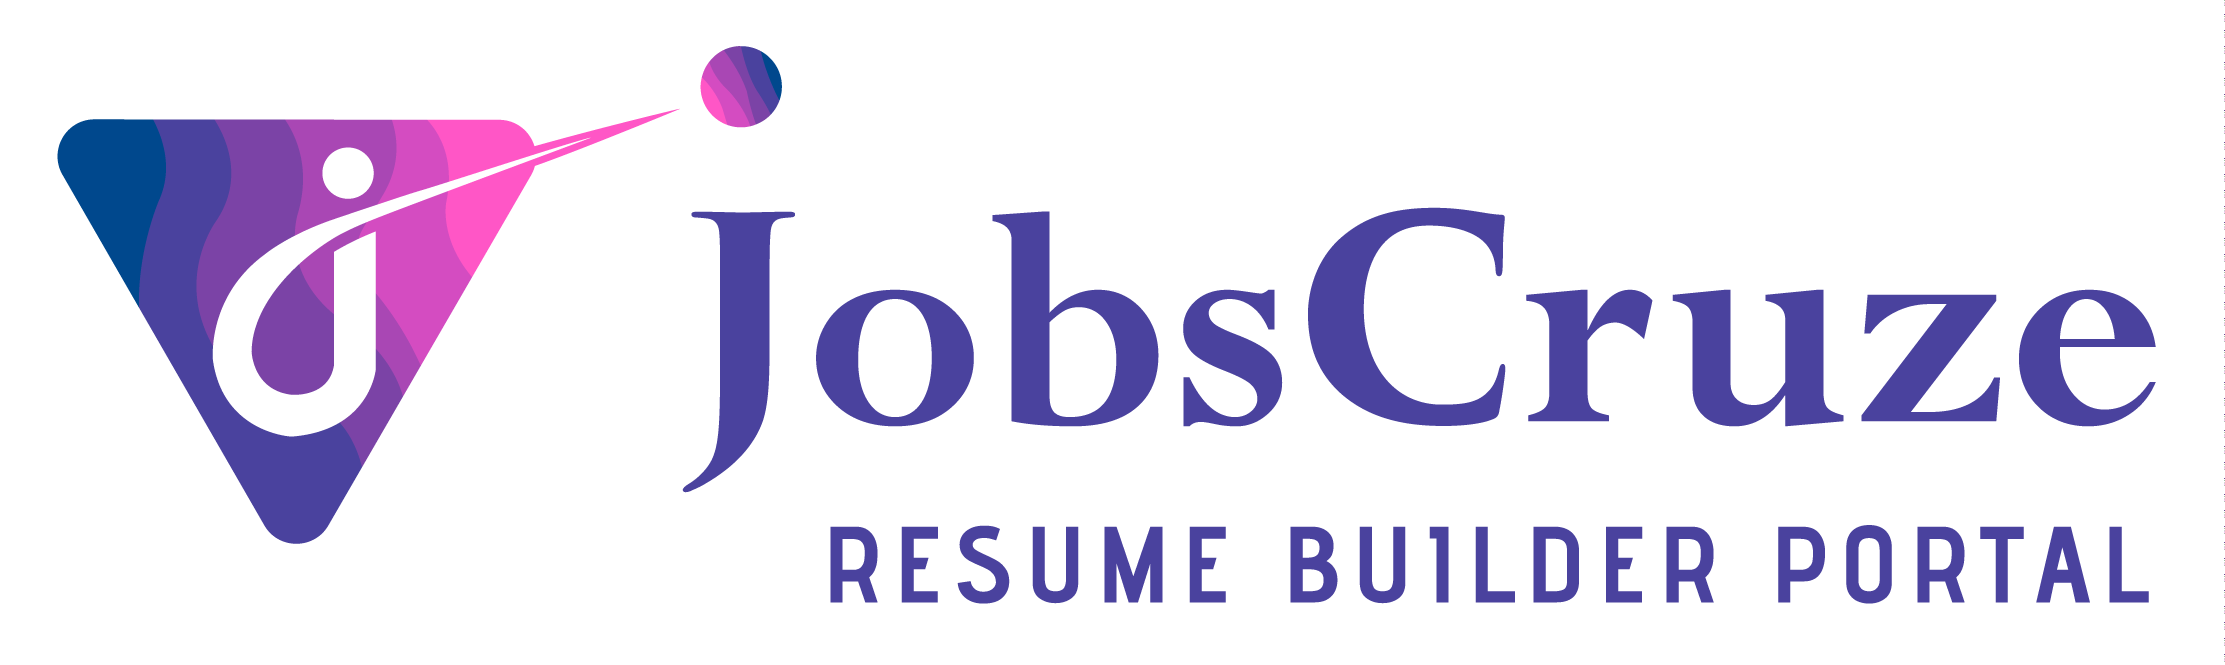 Jobscruze Resume Builder